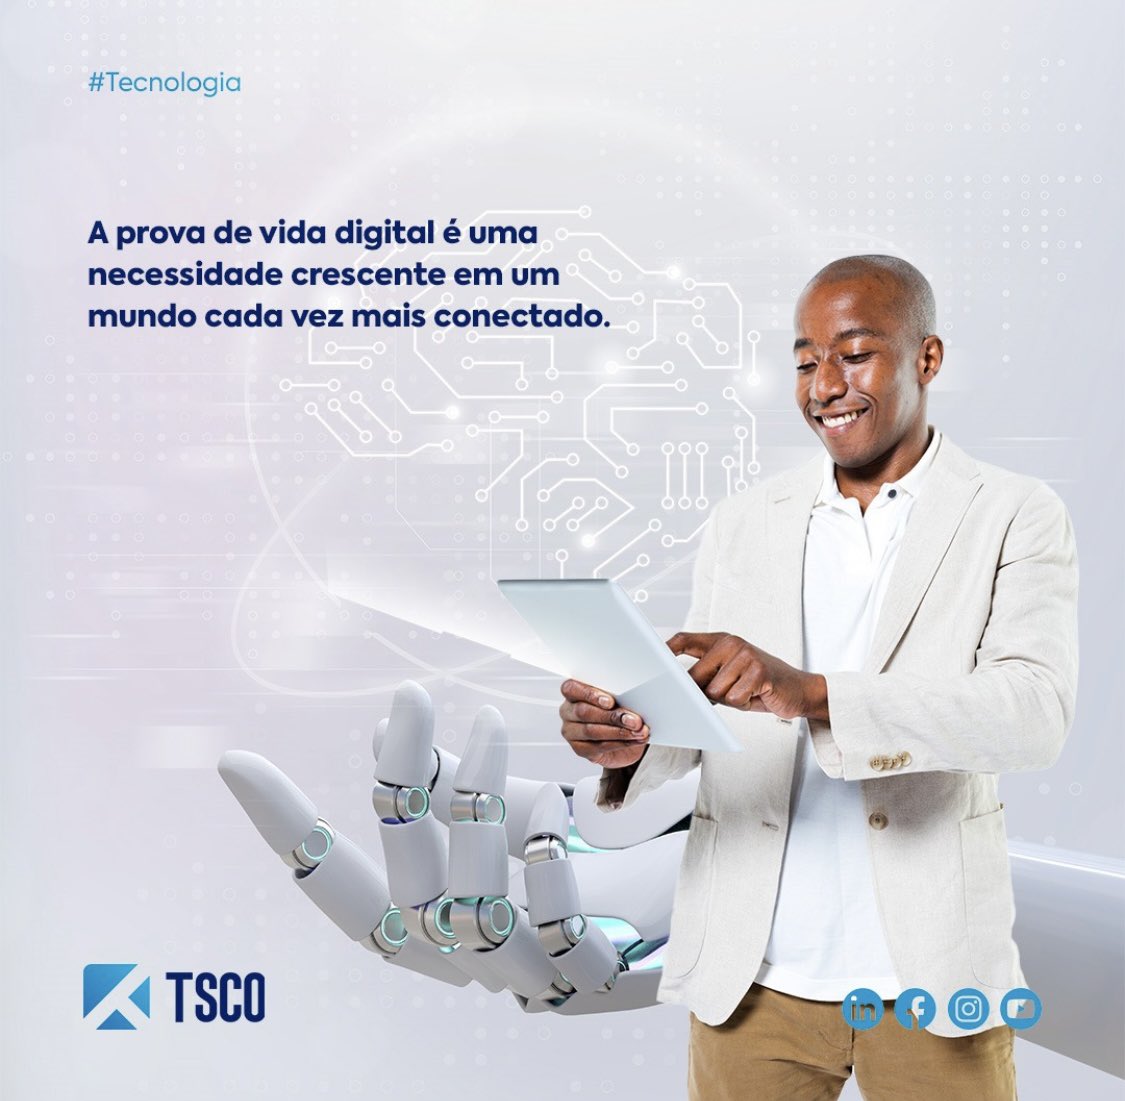 #TSCO
#ProvaDeVidaDigital #TecnologiaSegura
#Biometrialnovadora #ConveniênciaDigital
#VerificaçãoPrecisa #PlataformasRemotas
#EvoluçãoTecnológica #Integração